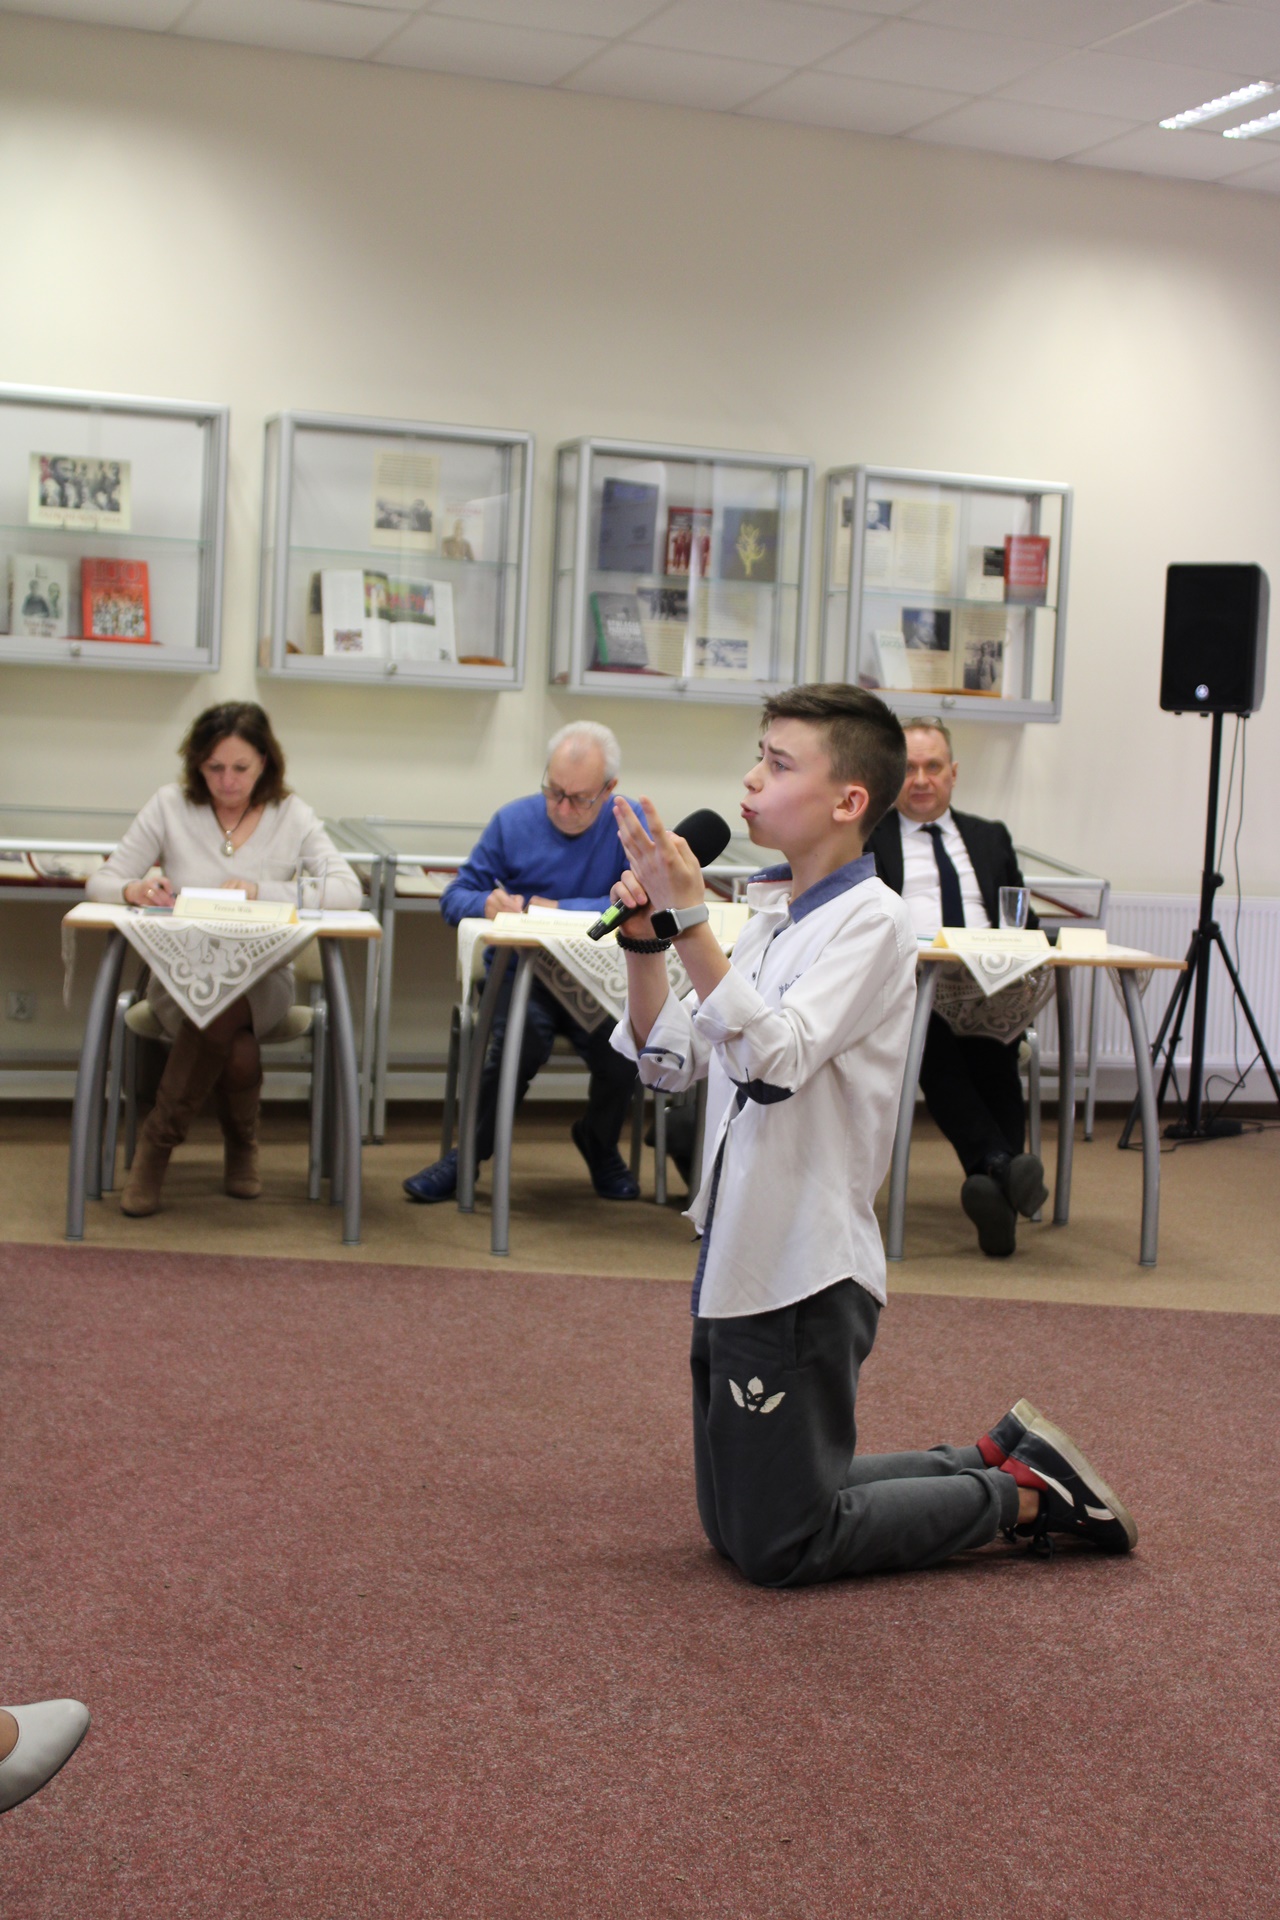 Chłopak w białej koszuli siwych spodniach i adidasach, podczas występu klęczy na wykładzinie i gestykulując recytuje wiersz.